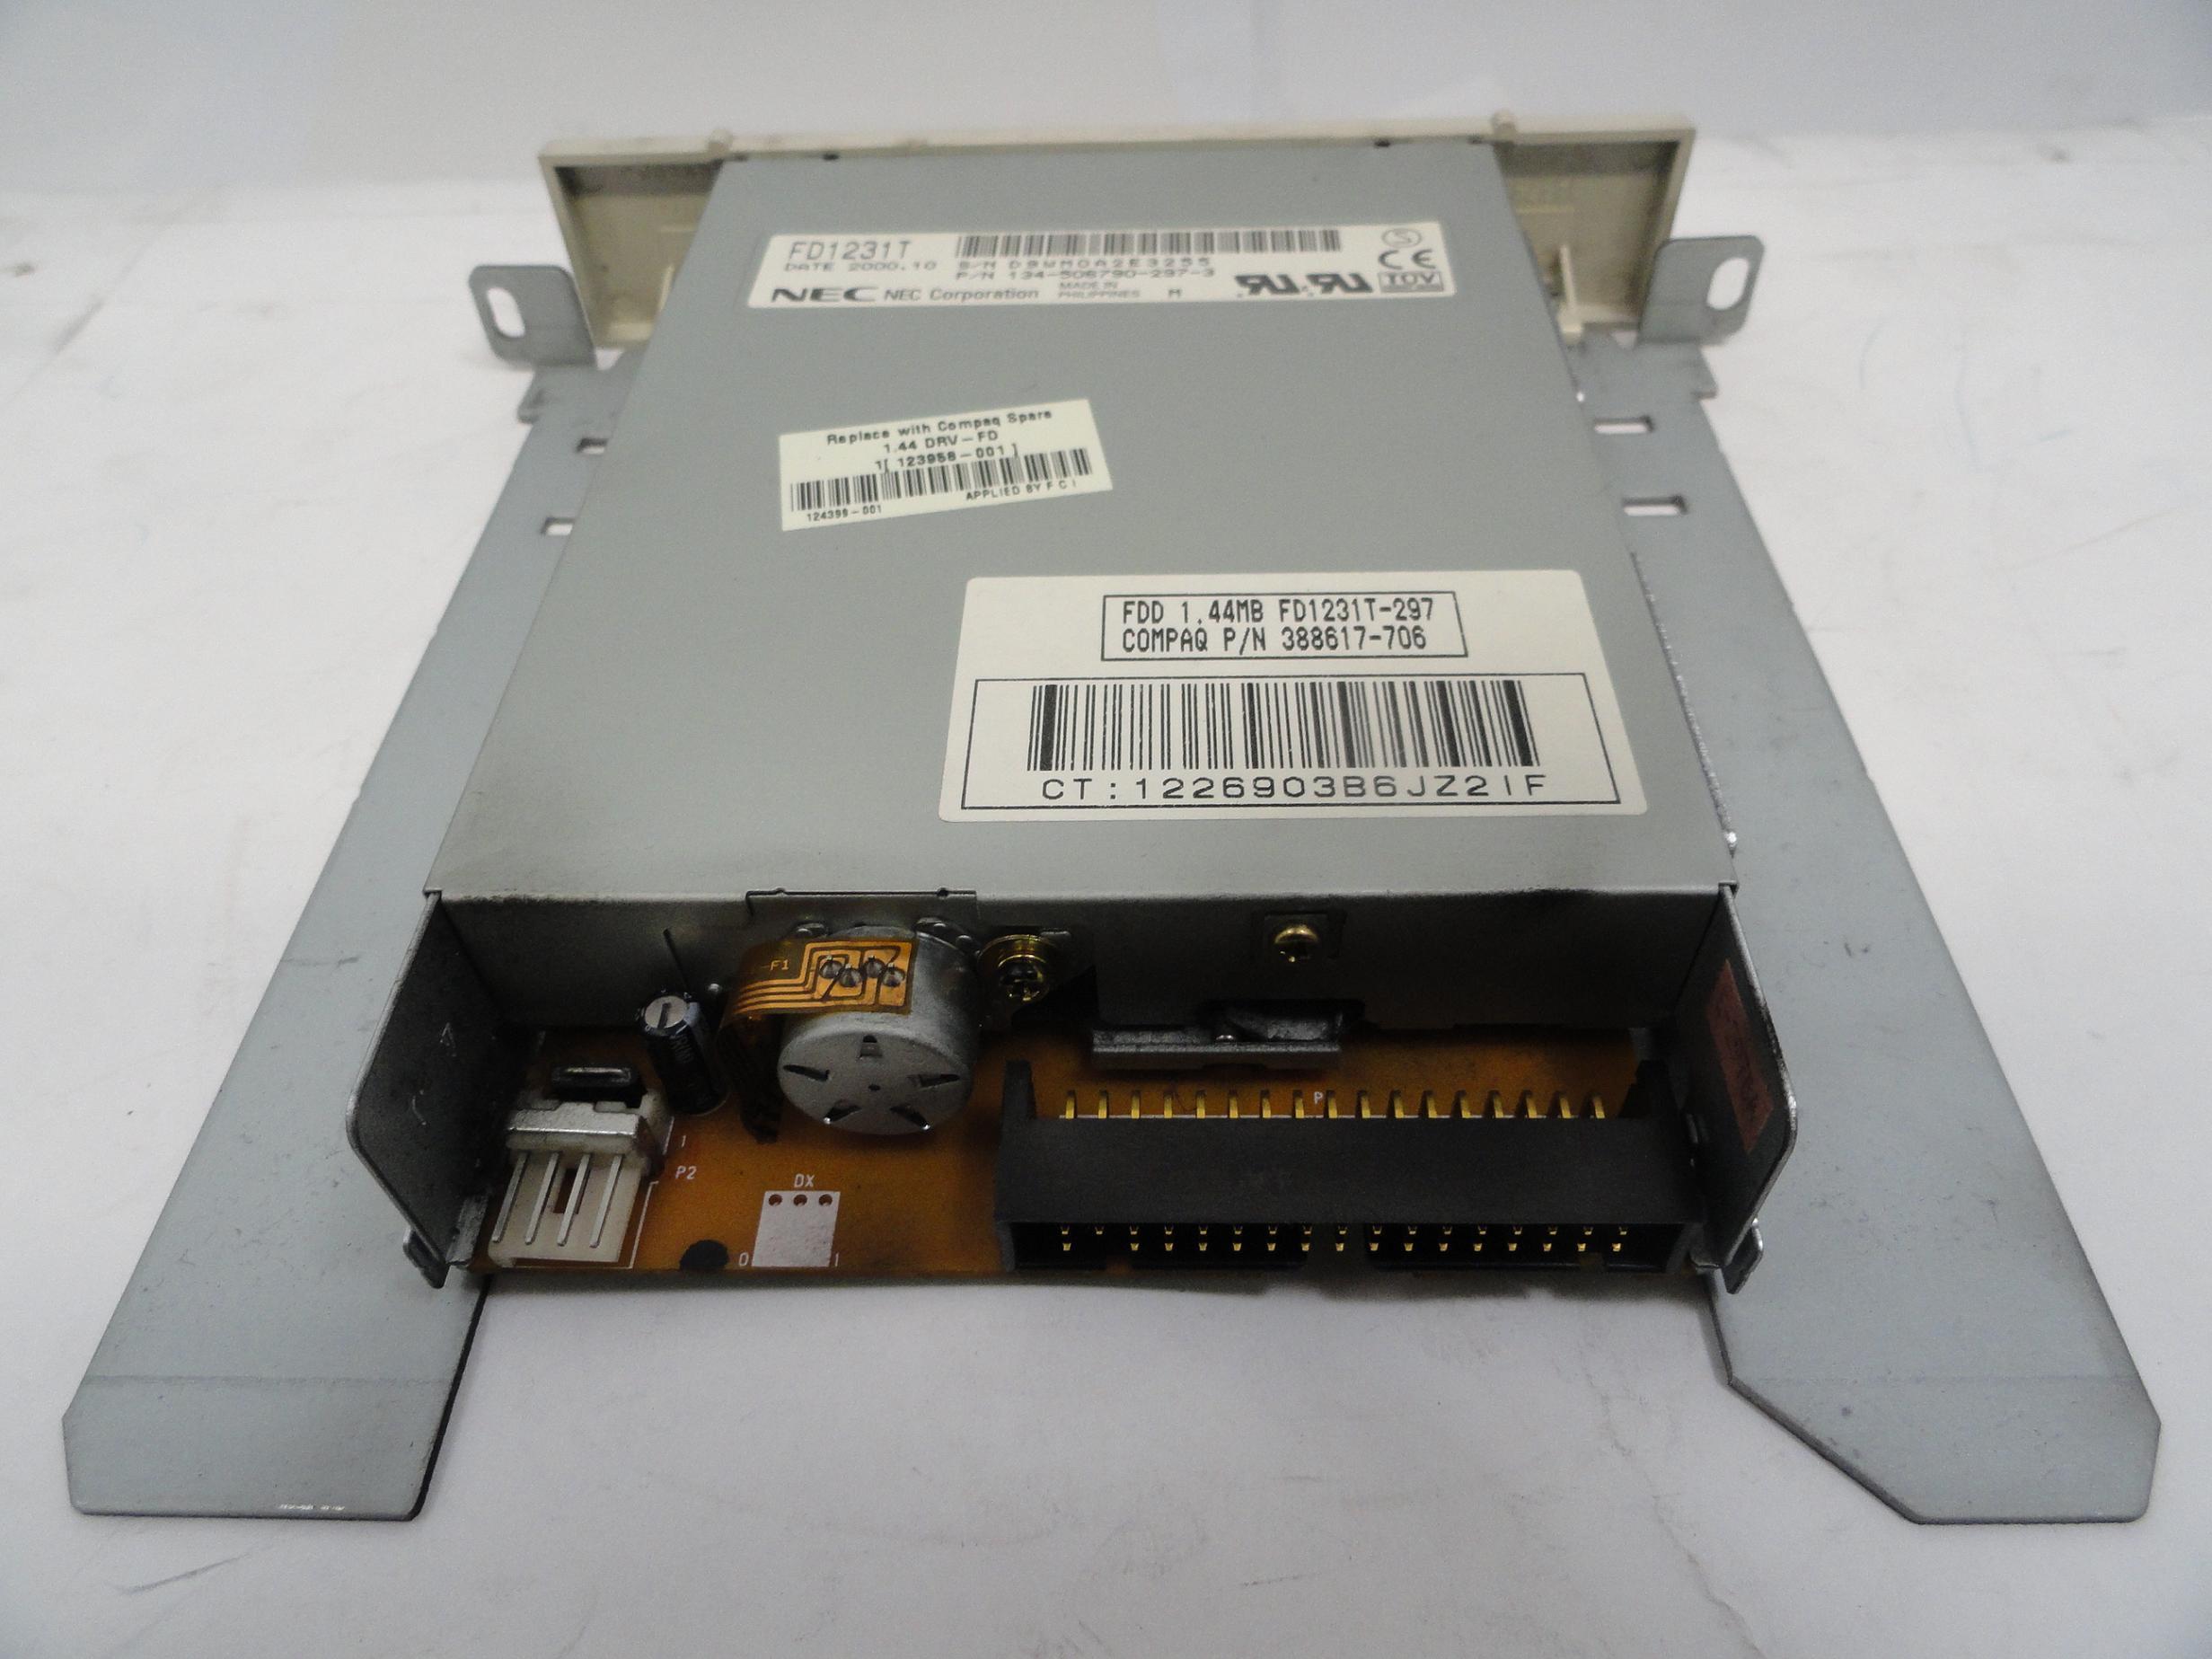 PR16663_F1231T-297_NEC 3.5in White Floppy Disc Drive in 5.25In Mount - Image2